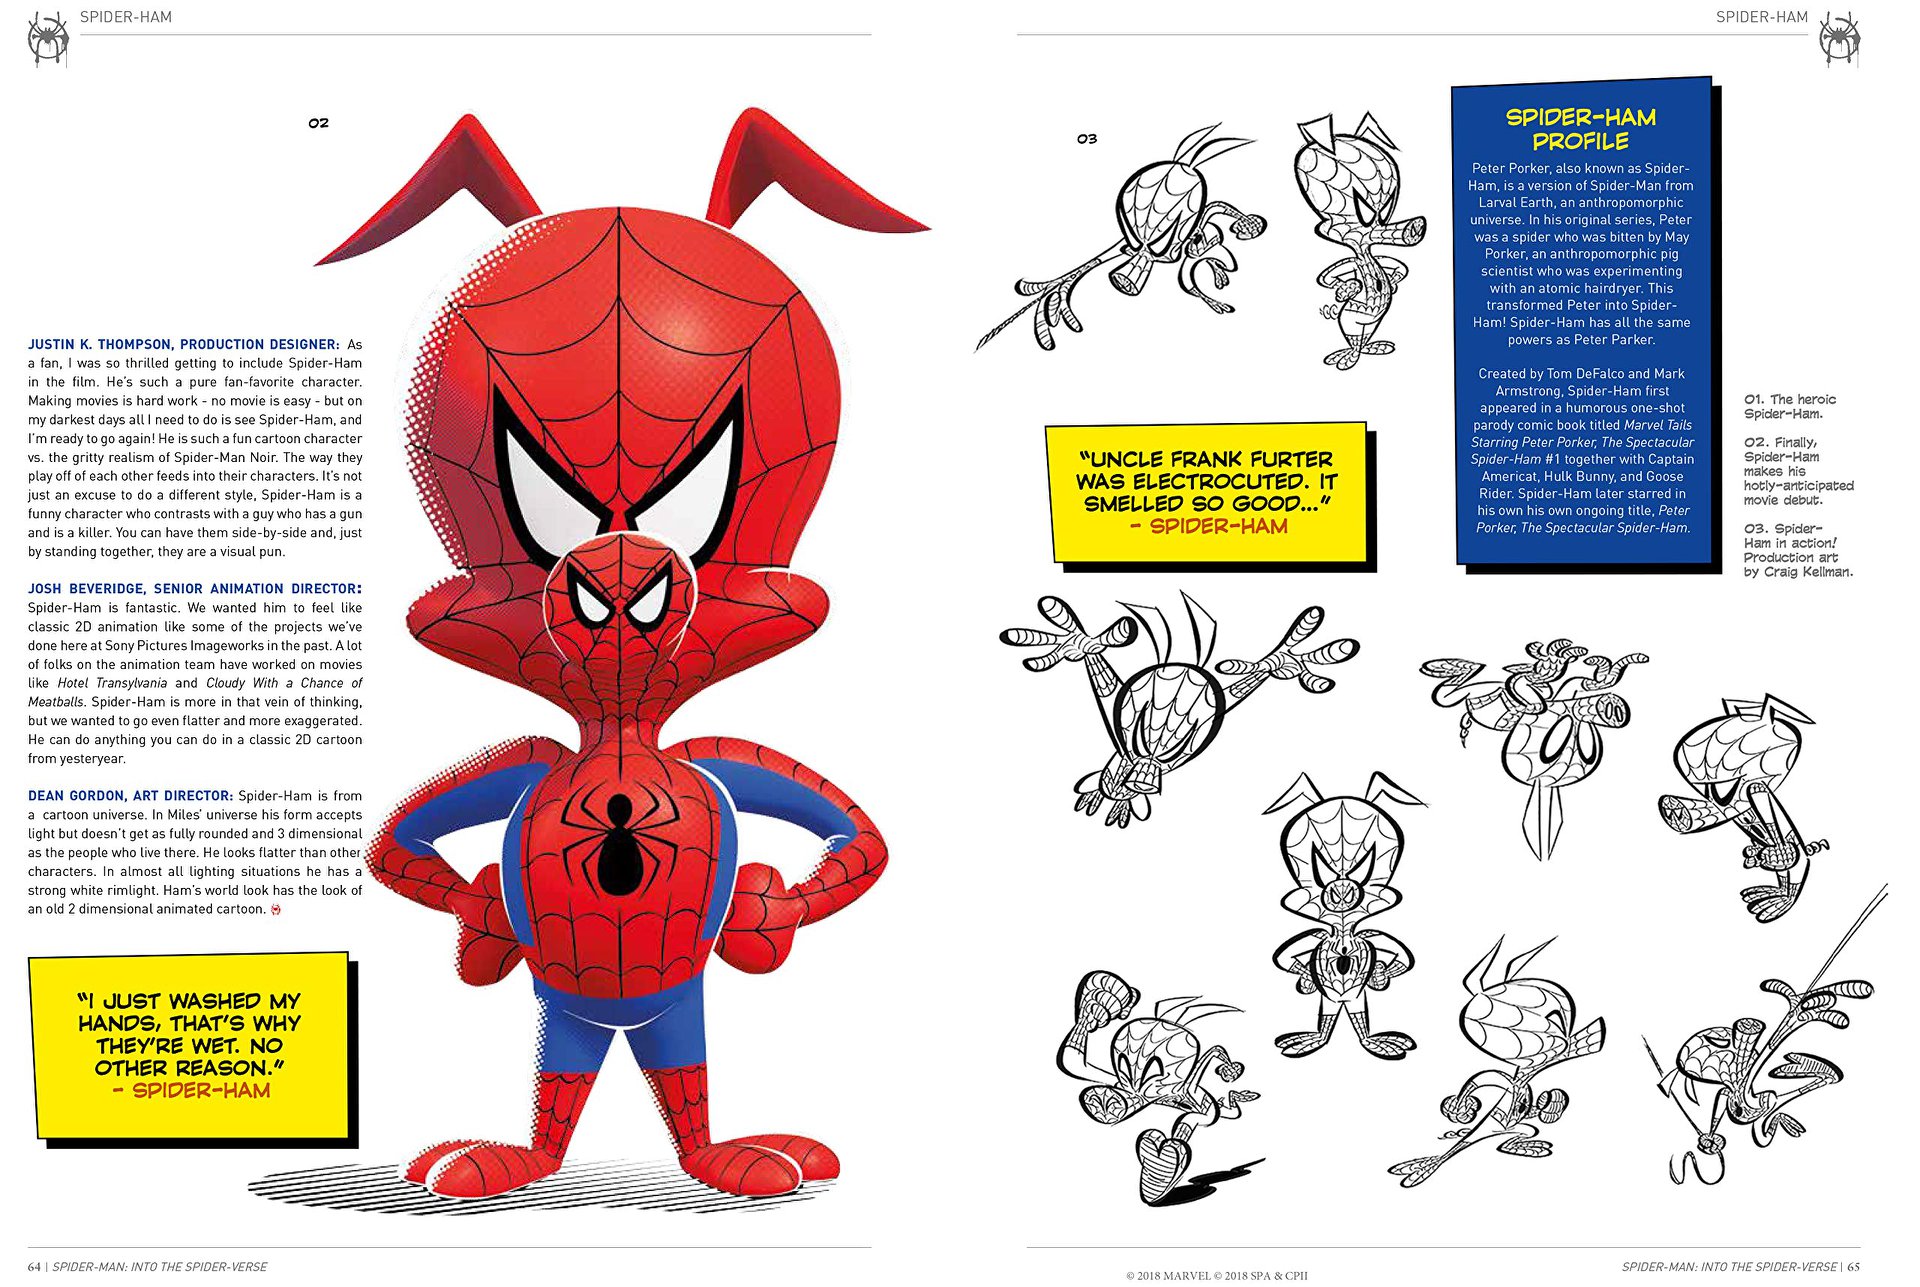 spider-man: into the spider-verse este un film complet nou, care combina animatia pe calculator cu desenele de mana si care arata cum nu s-a mai vazut in niciun film din trecut (video) Spider-Man: Into the Spider-Verse este un film complet nou, care combina animatia pe calculator cu desenele de mana si care arata cum nu s-a mai vazut in niciun film de animatie (VIDEO) Omul paianjen In lumea paianjenului 1